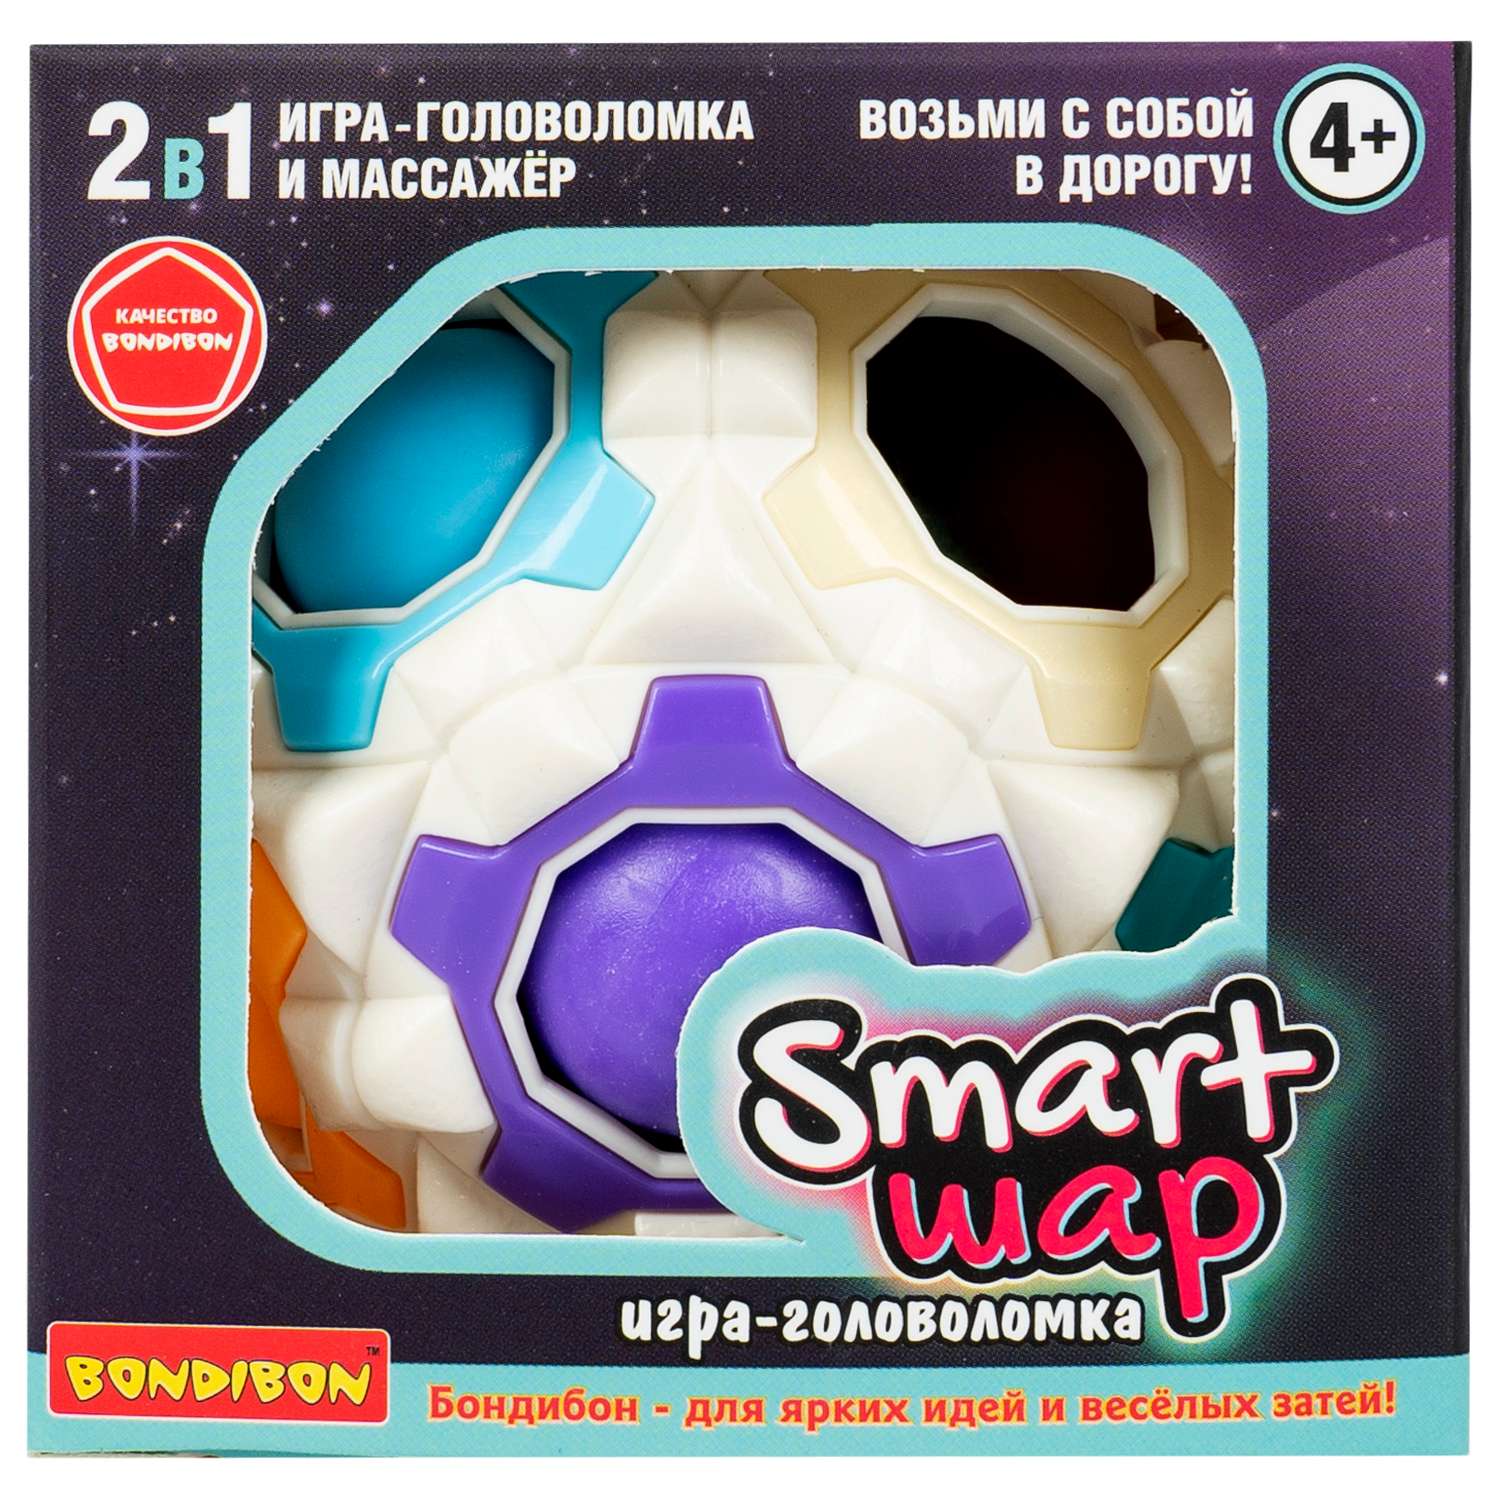 Развивающая головоломка BONDIBON SMART шар 2в1 игрушка - массажер белого цвета - фото 2